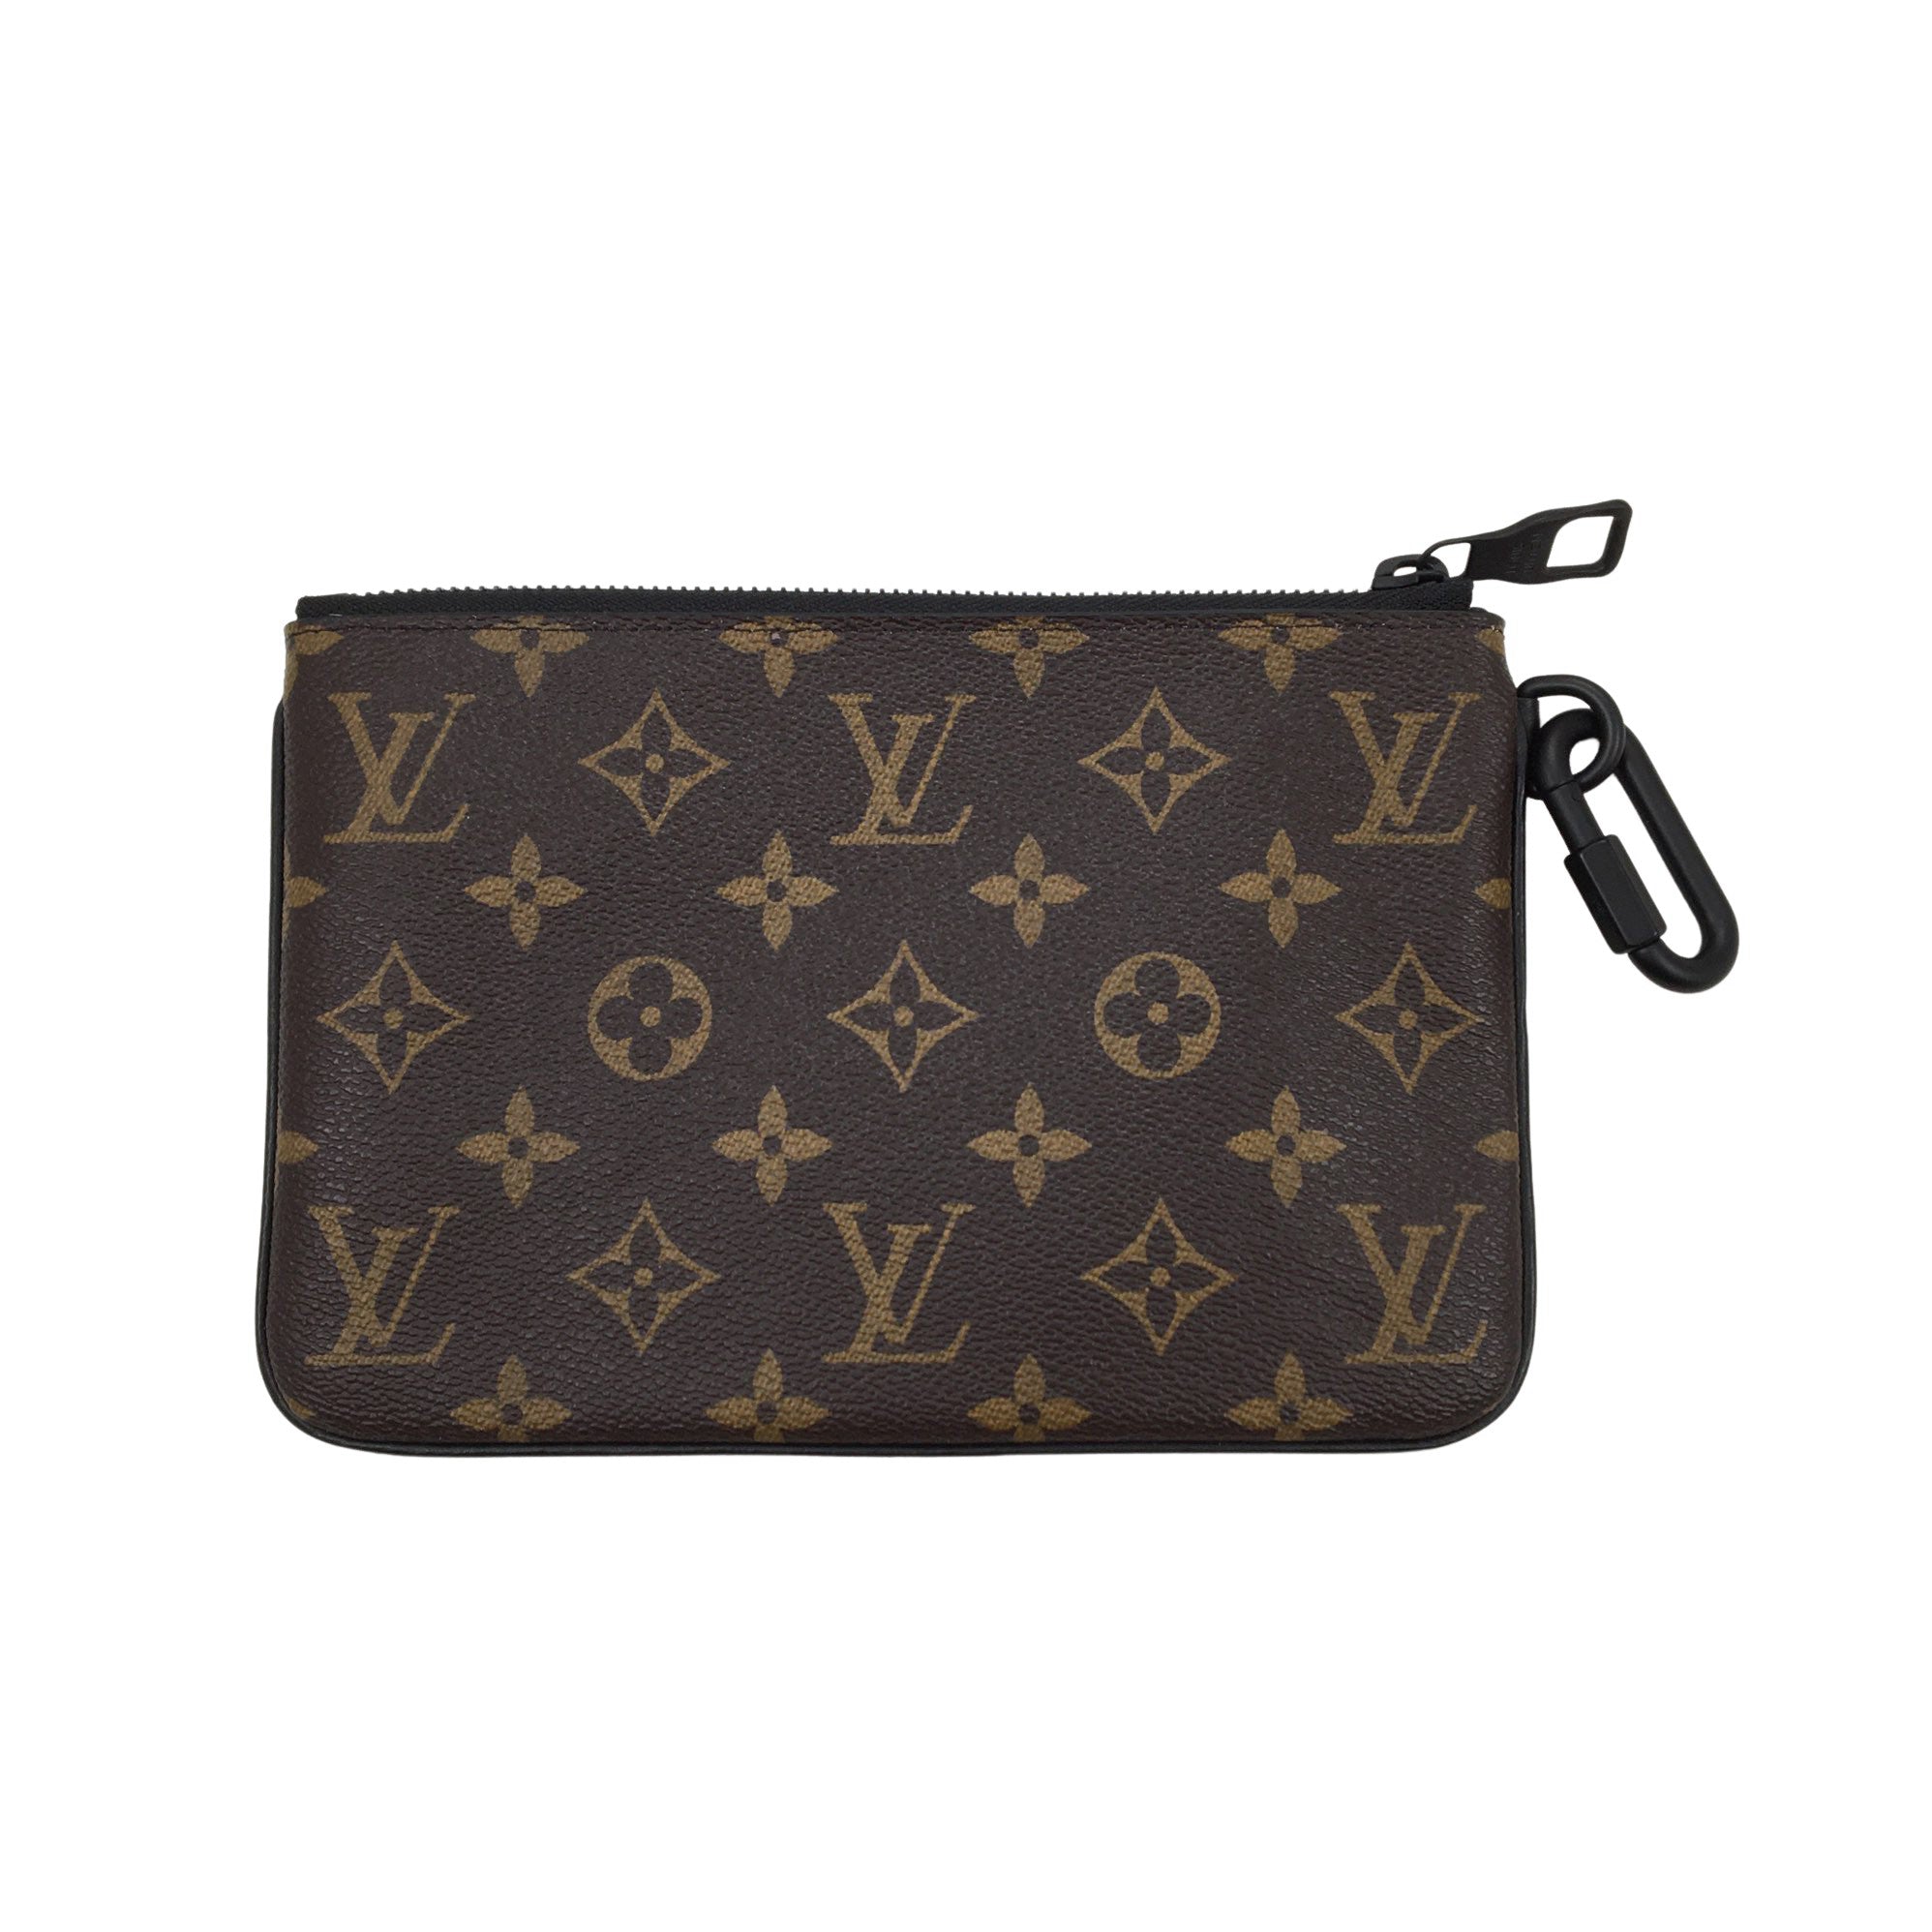 Women's Louis Vuitton Handbag, size Mini (Brown)